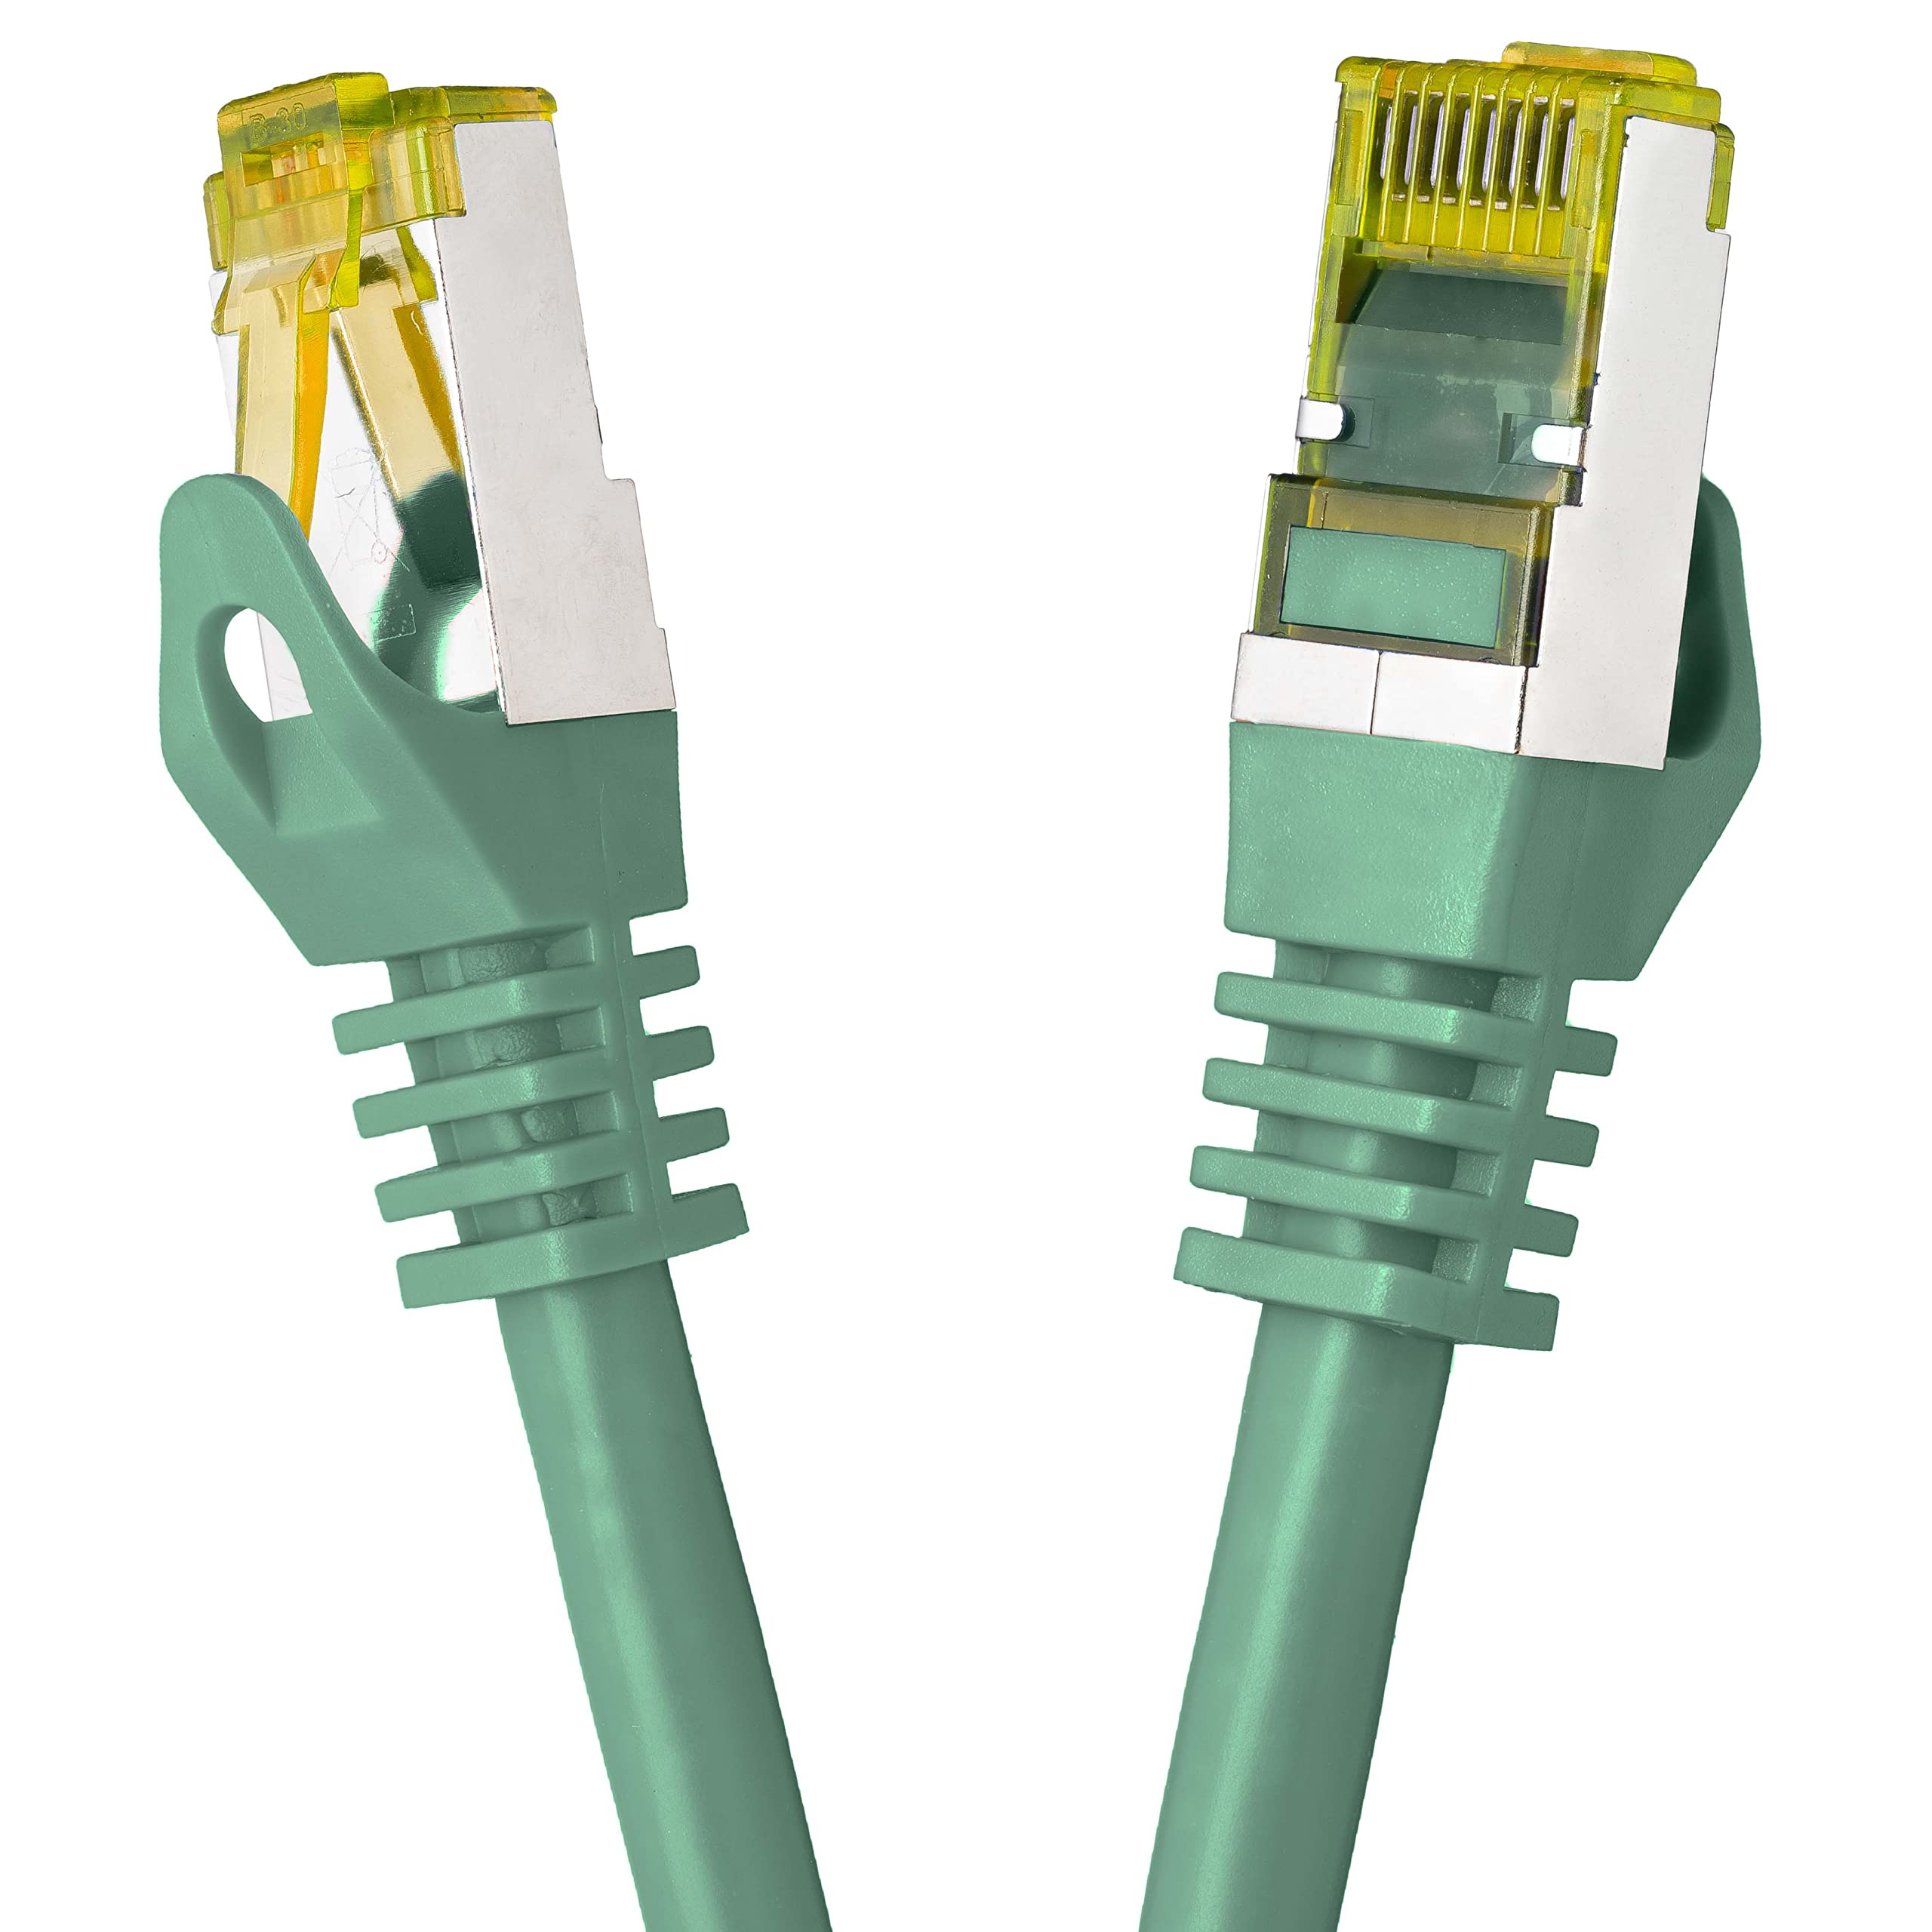 BIGtec LAN Kabel 30m Netzwerkkabel CAT7 Ethernet Internet Patchkabel CAT.7 grün Gigabit doppelt geschirmt Netzwerke Modem Router Switch 2 x Stecker RJ45 kompatibel zu CAT.5 CAT.6 CAT.6a CAT.8